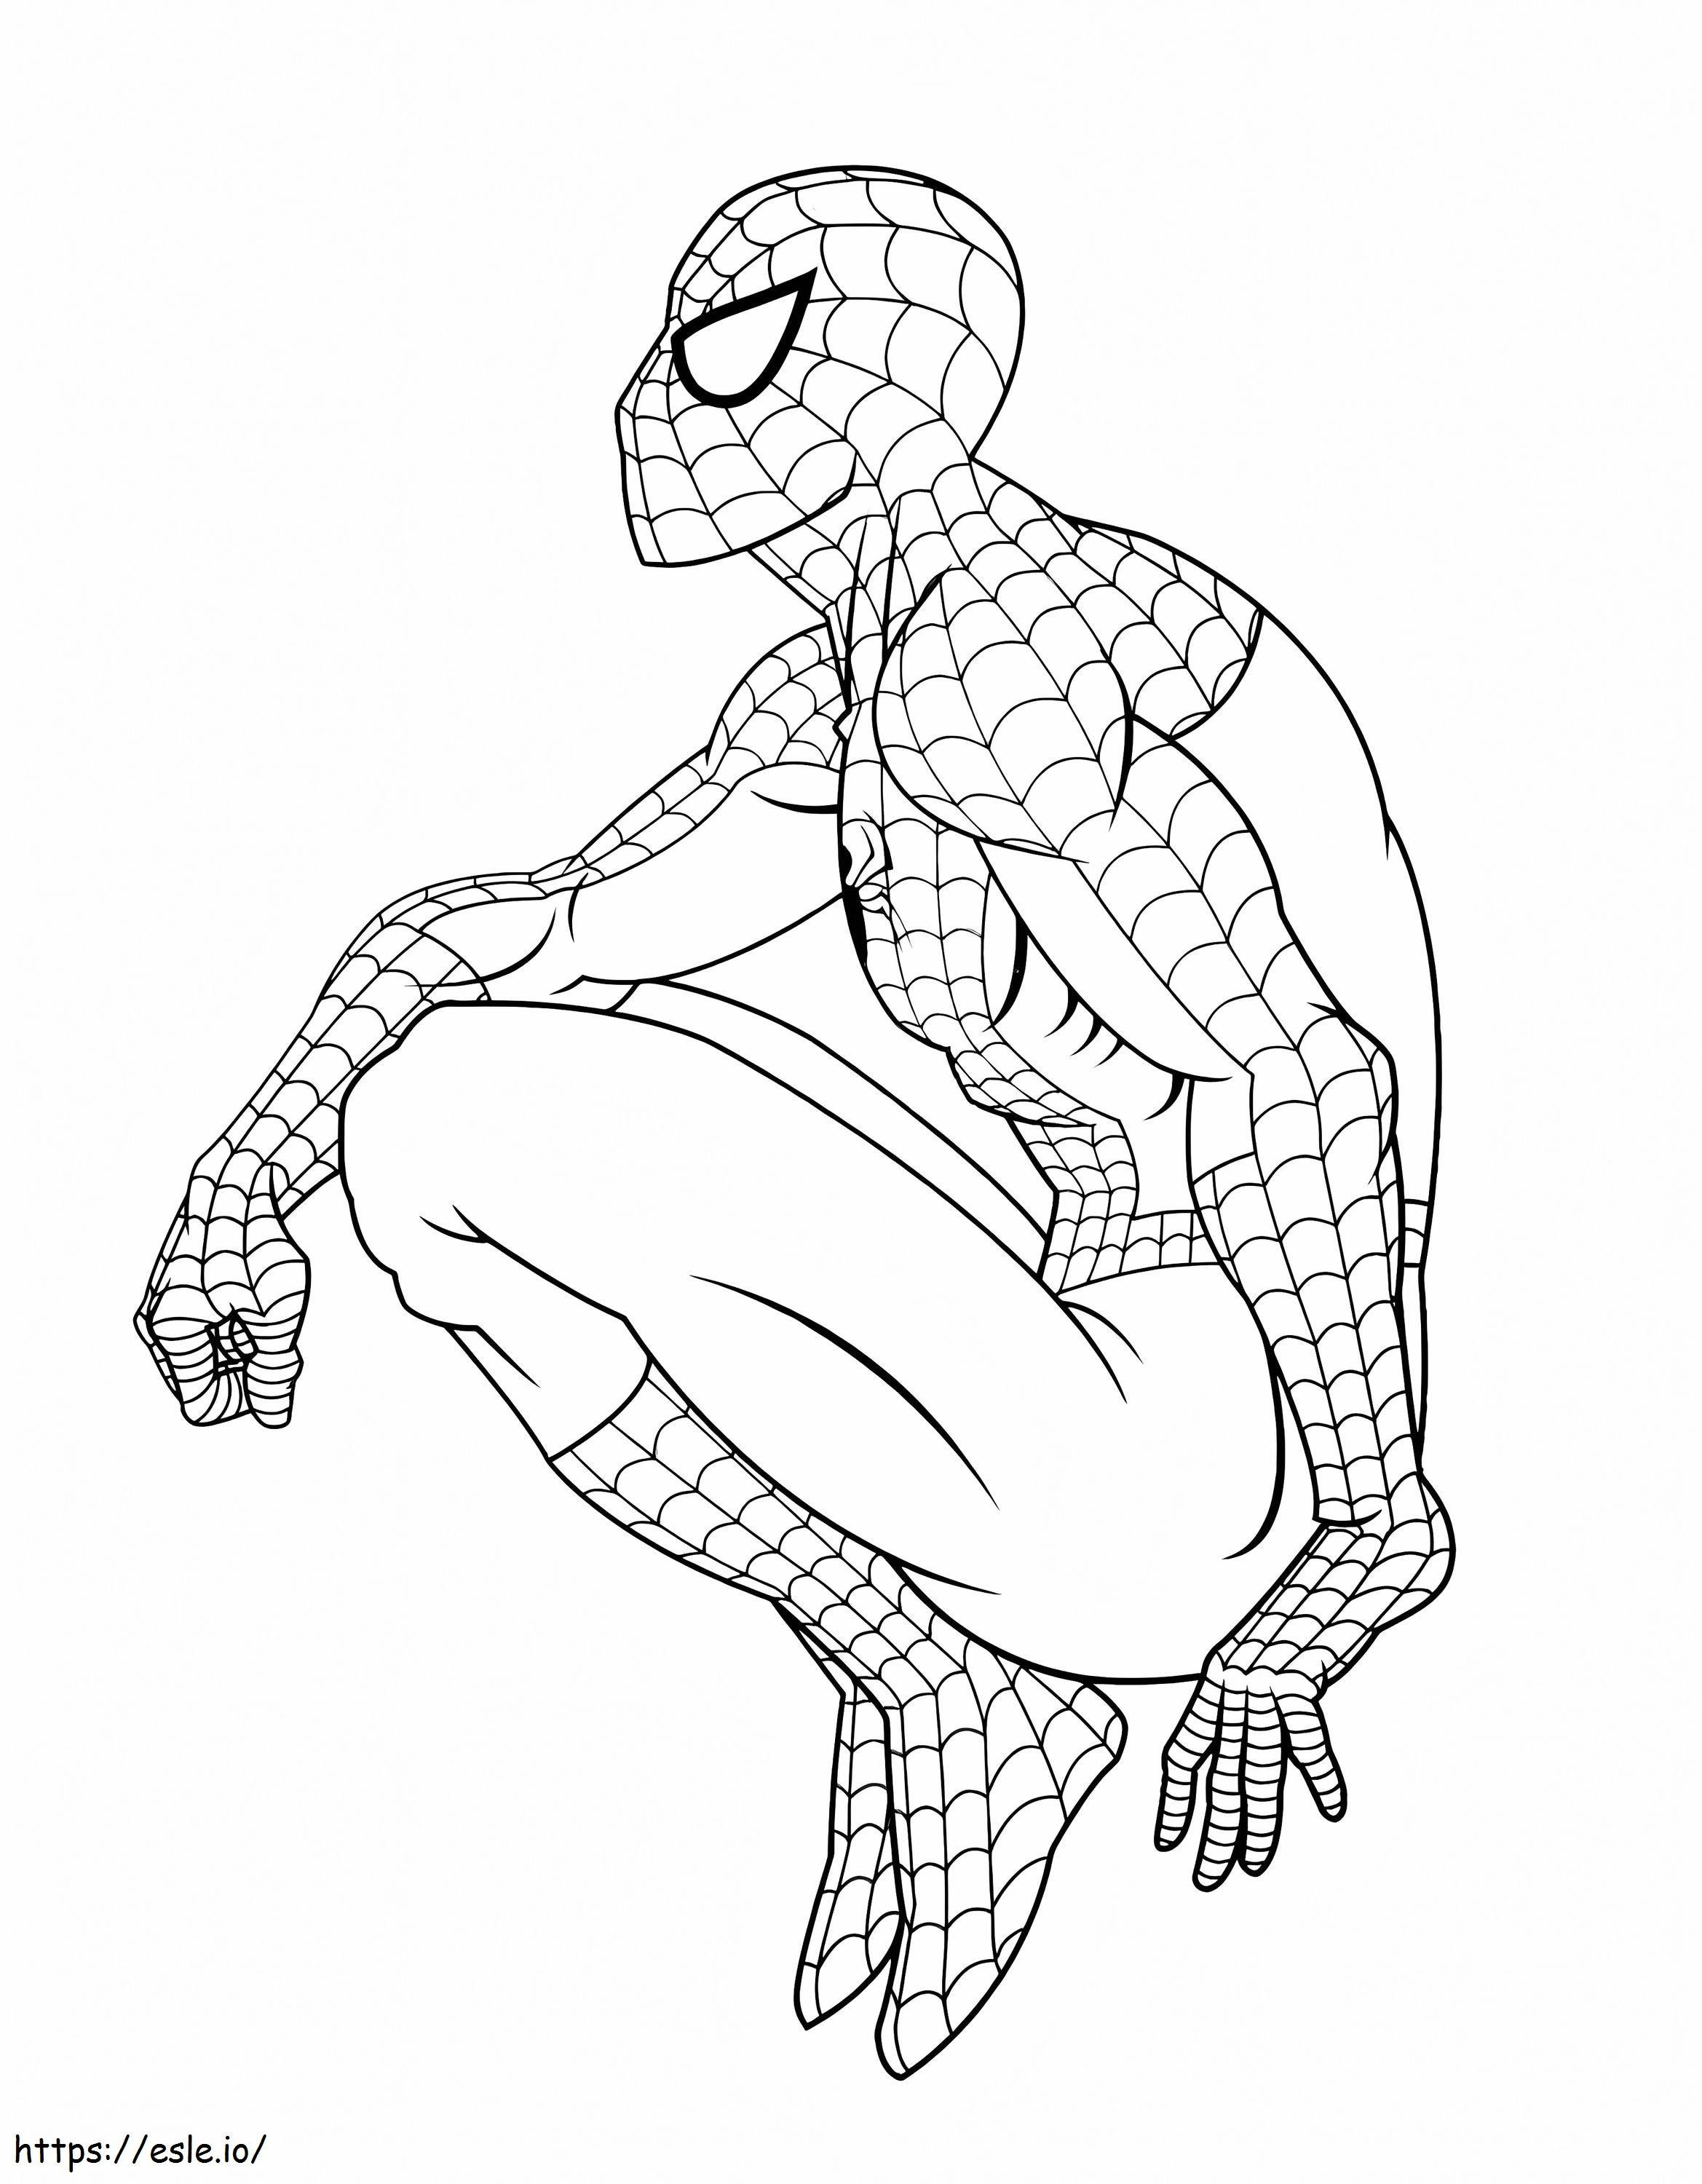 Coloriage Spiderman Génial 798X1024 à imprimer dessin